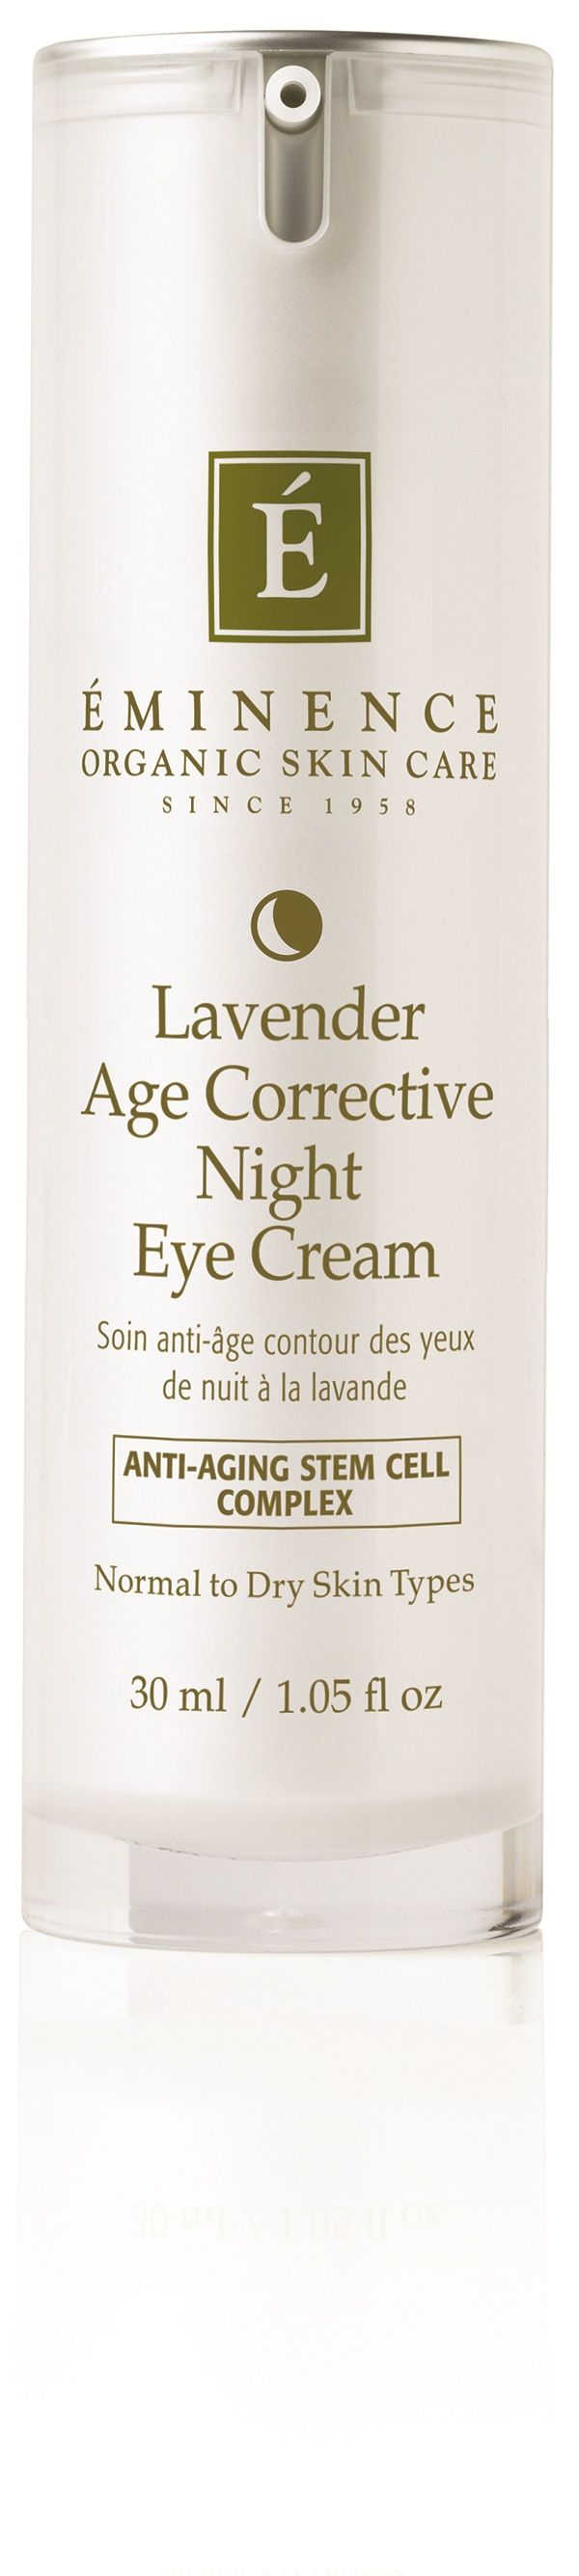 Éminence Lavender Age Corrective Eye Cream